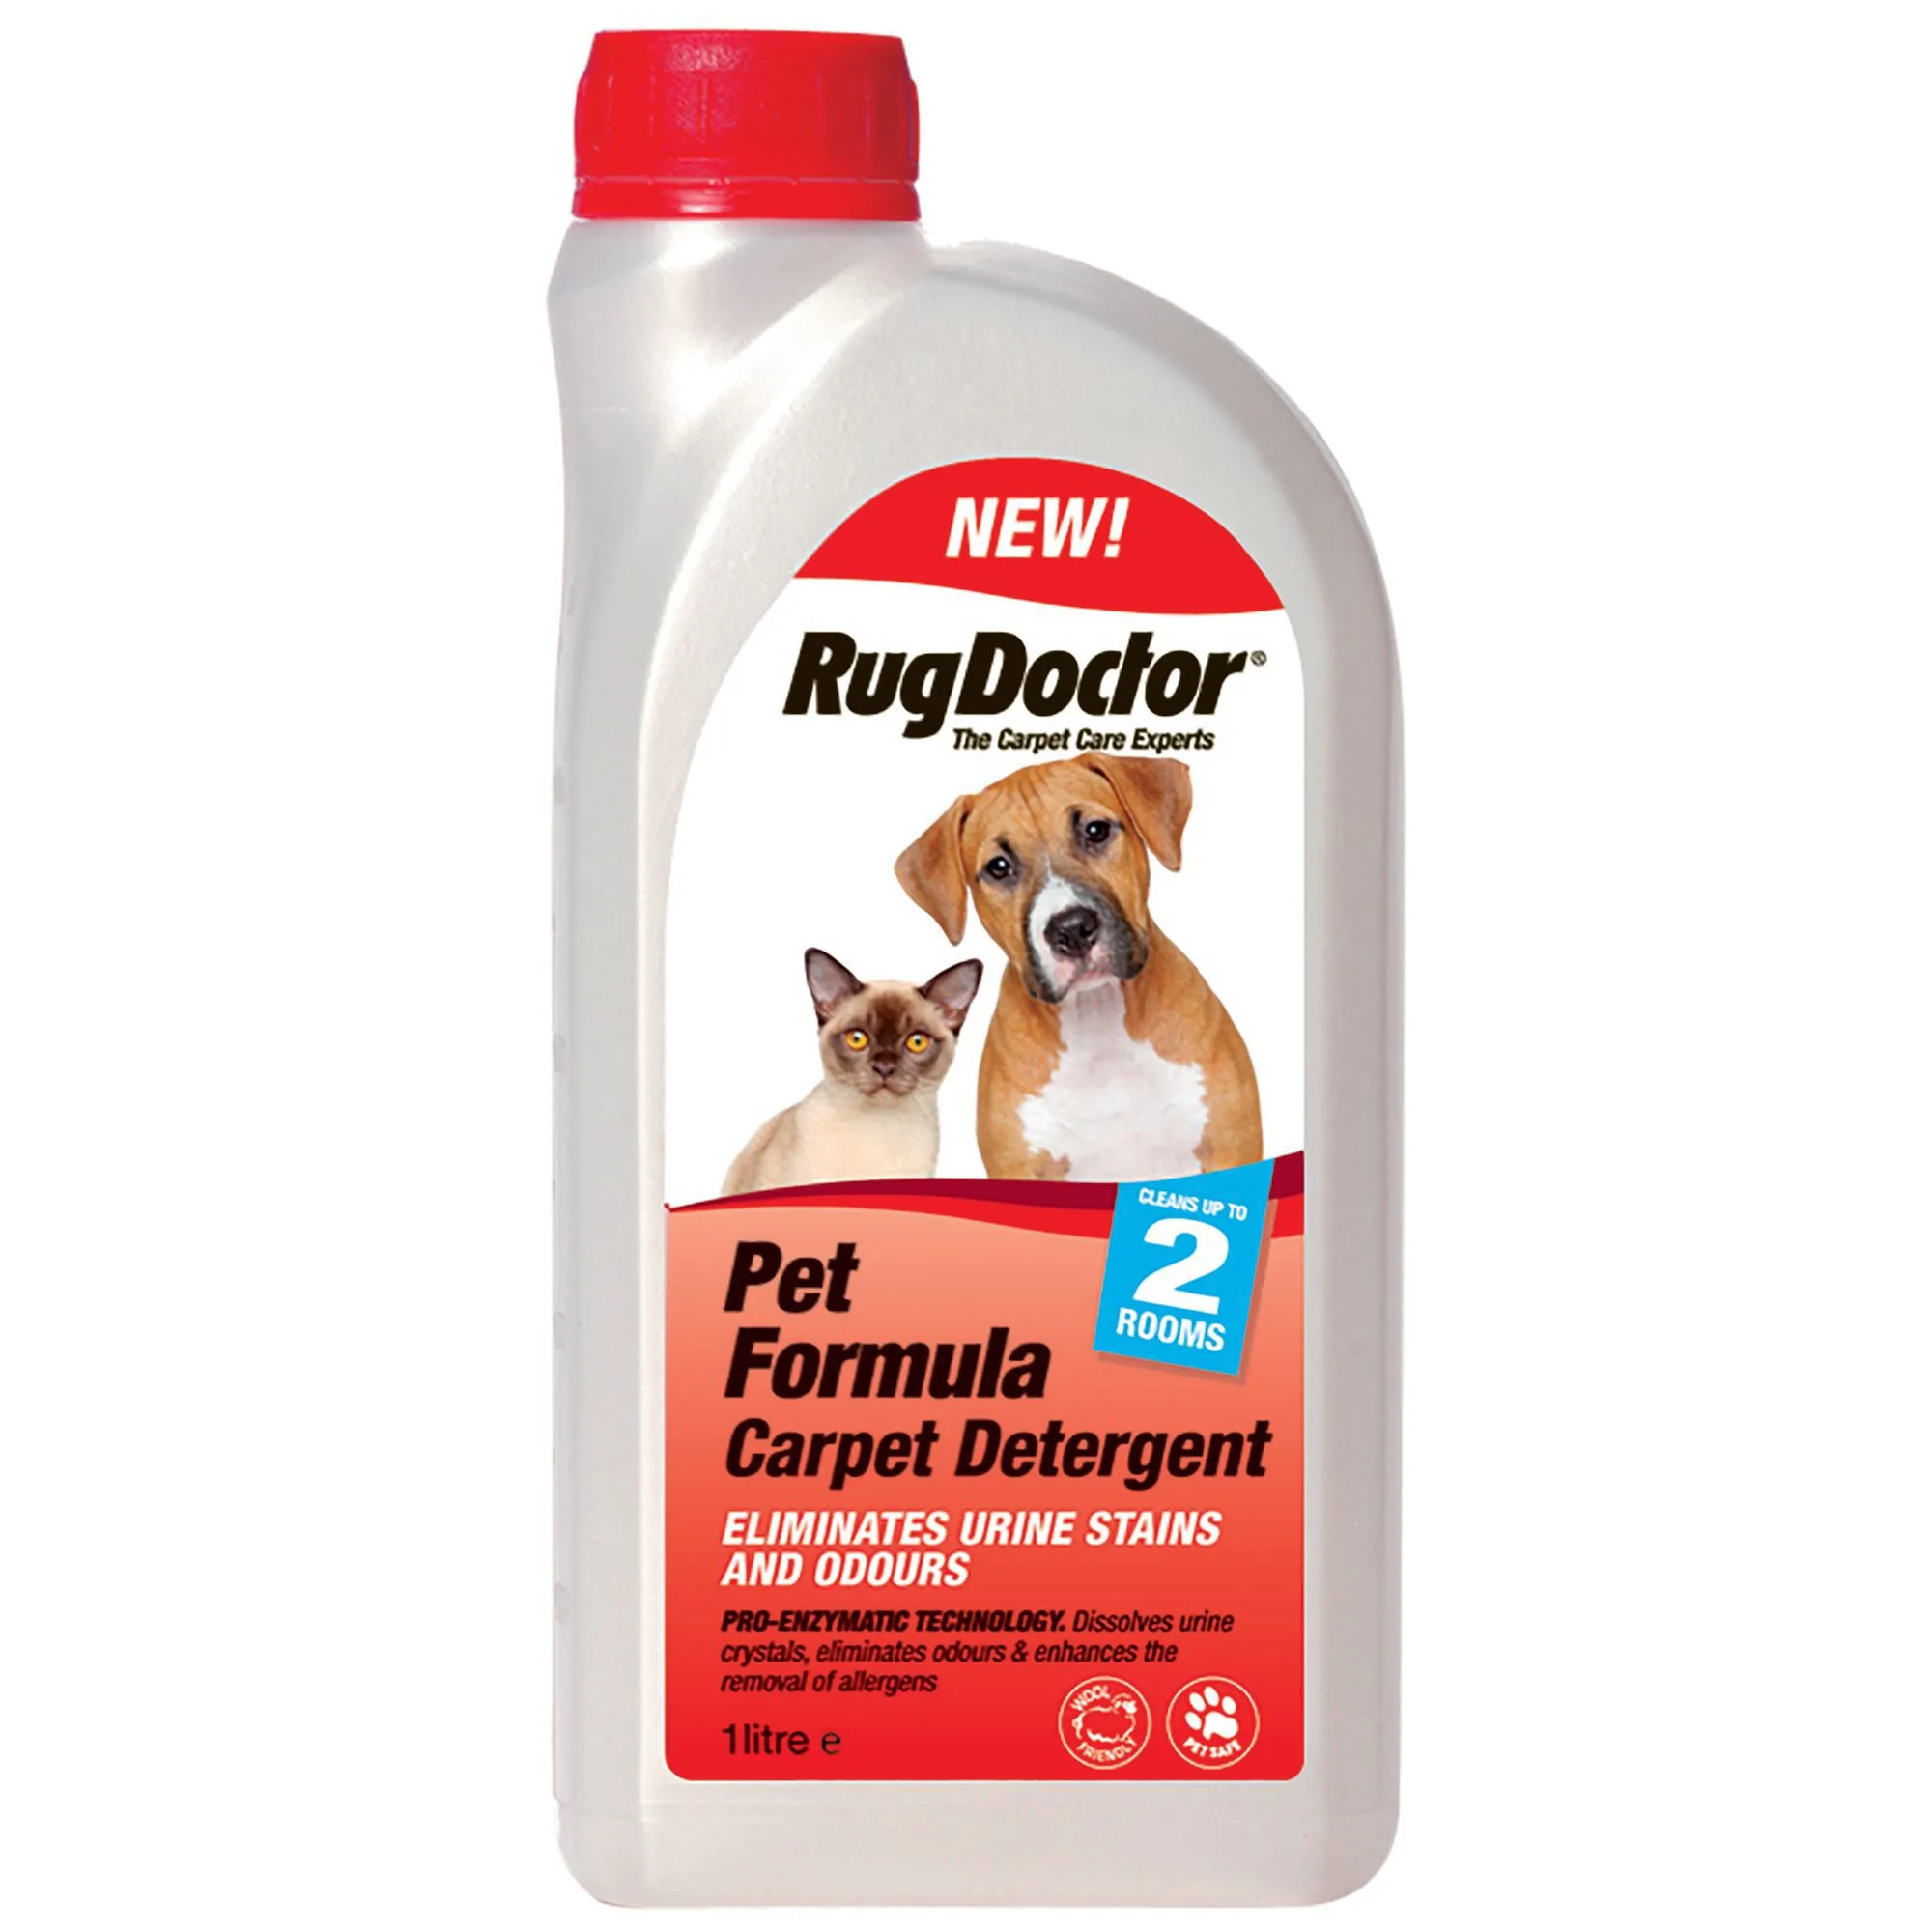 Rug Doctor Ever fresh fragrance Pet detergent, 1L